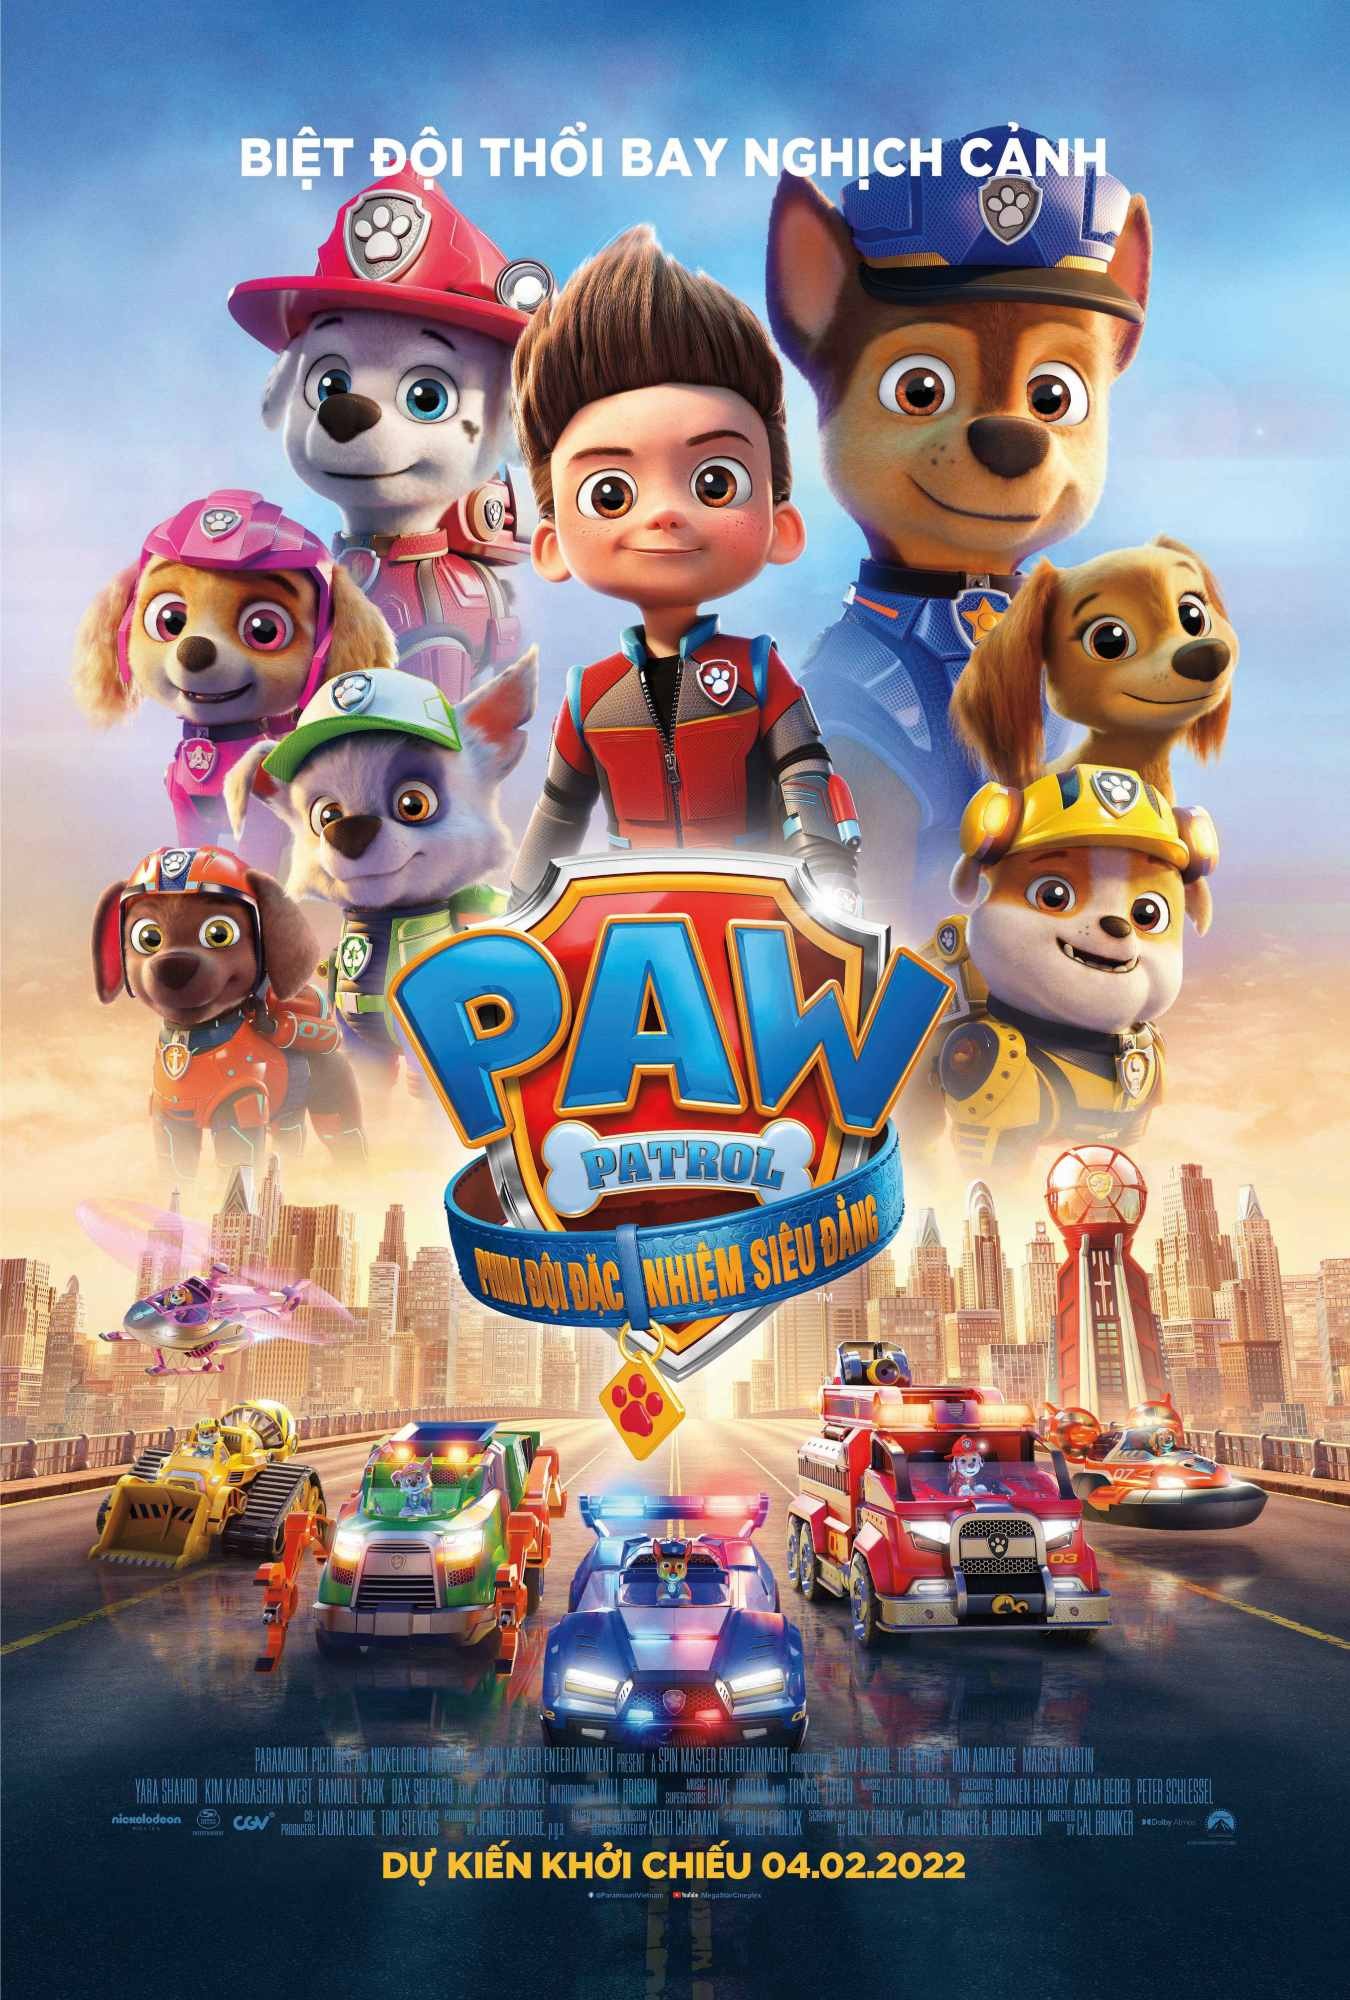 Phim Đội Chó Cứu Hộ Paw Patrol - Siêu phẩm hoạt hình dành cho trẻ em